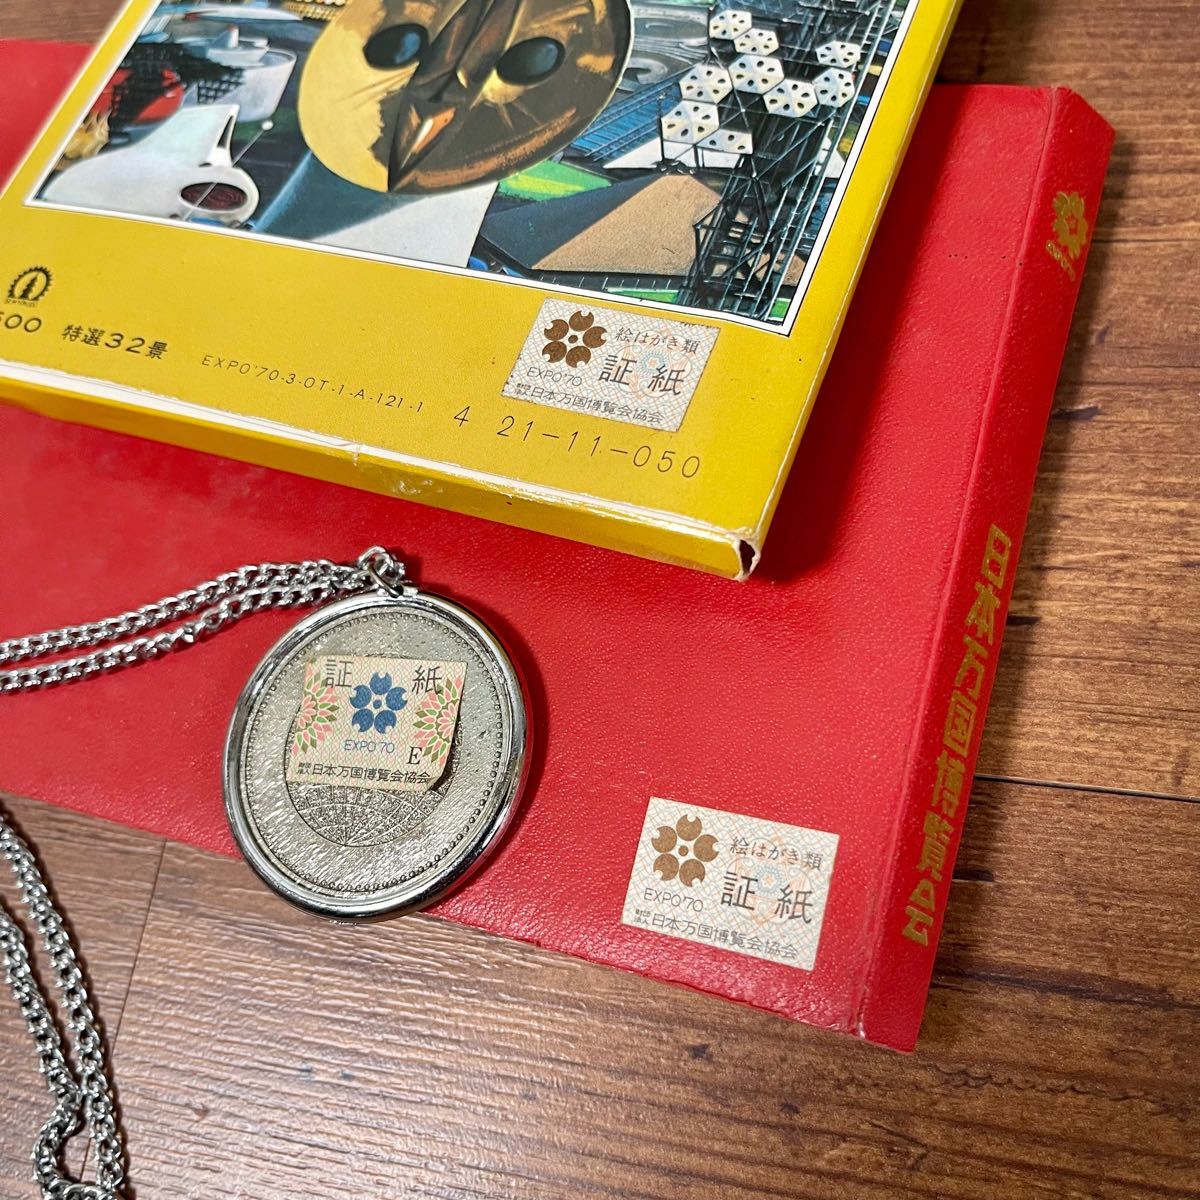 1970 大阪万博 スタンプコレクション&ポストカード&記念コインのセット